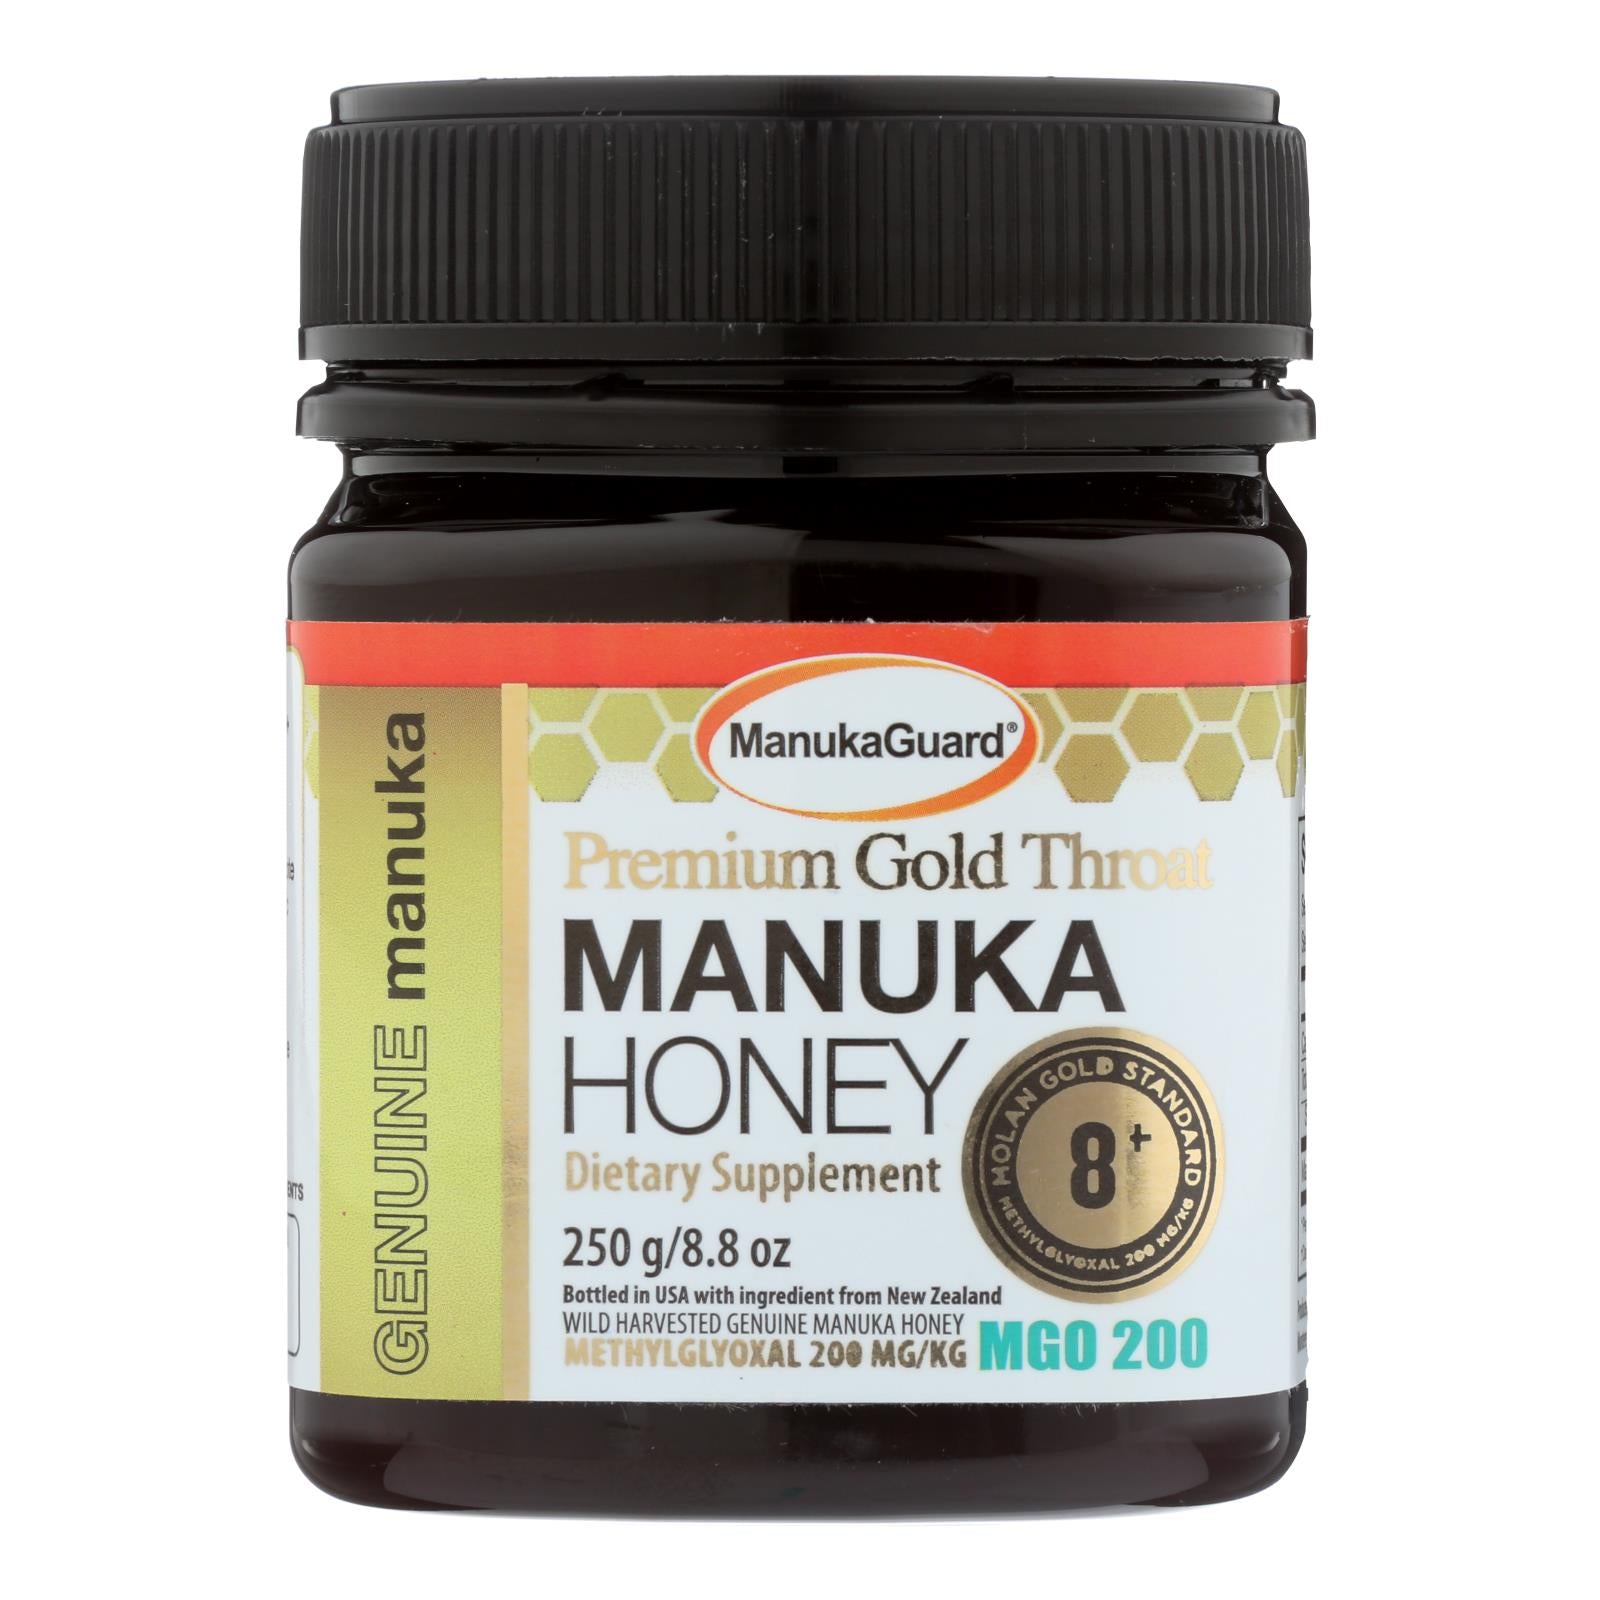 Manukaguard, Manukaguard - Miel de Manuka Prem Gold 8+ - 8.8 OZ